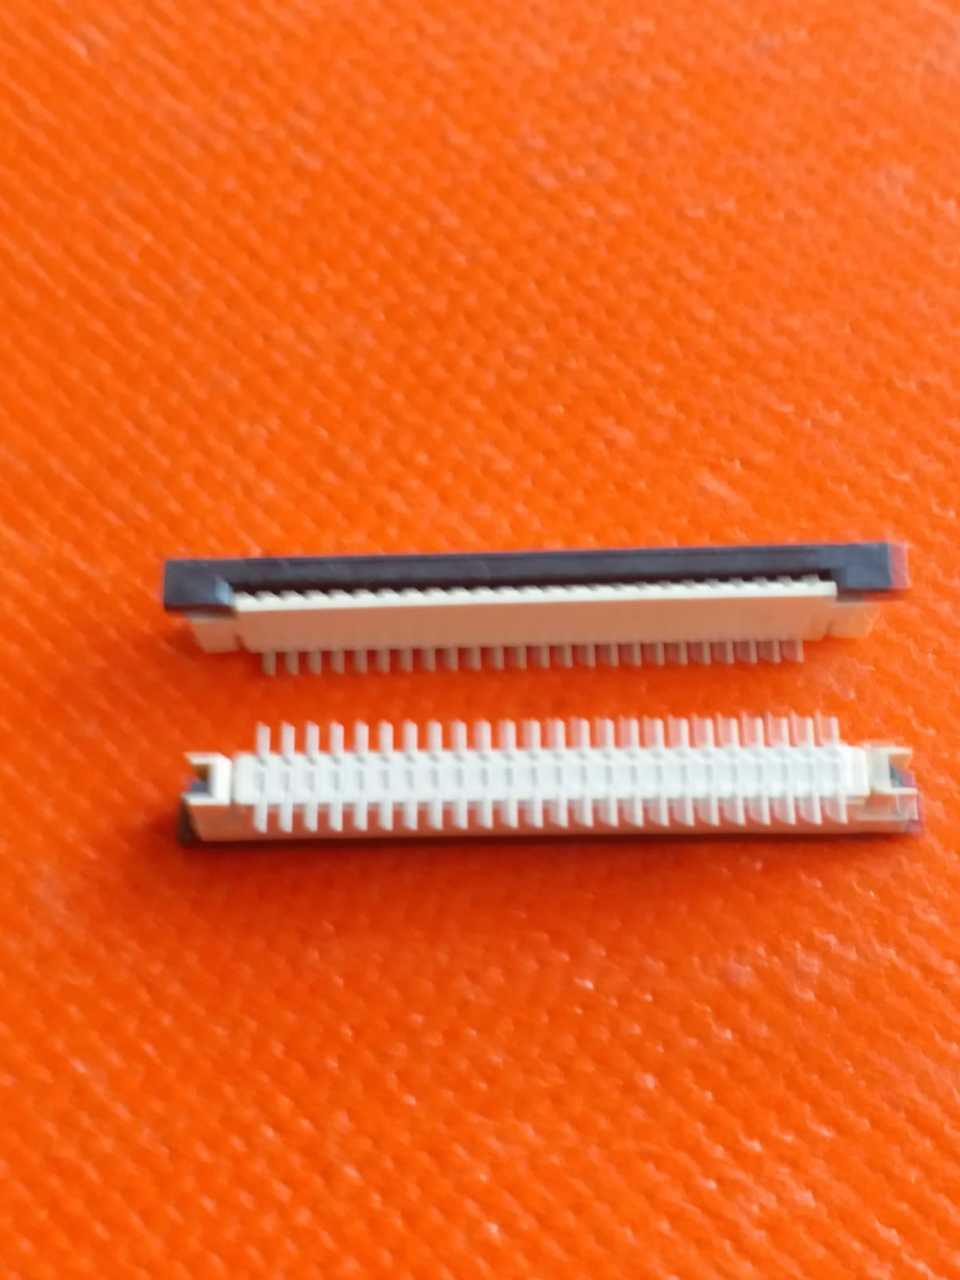 48 li (2x24 lü) Flat(Yassı) kablo tipi Dişi smd Konnektör (G)